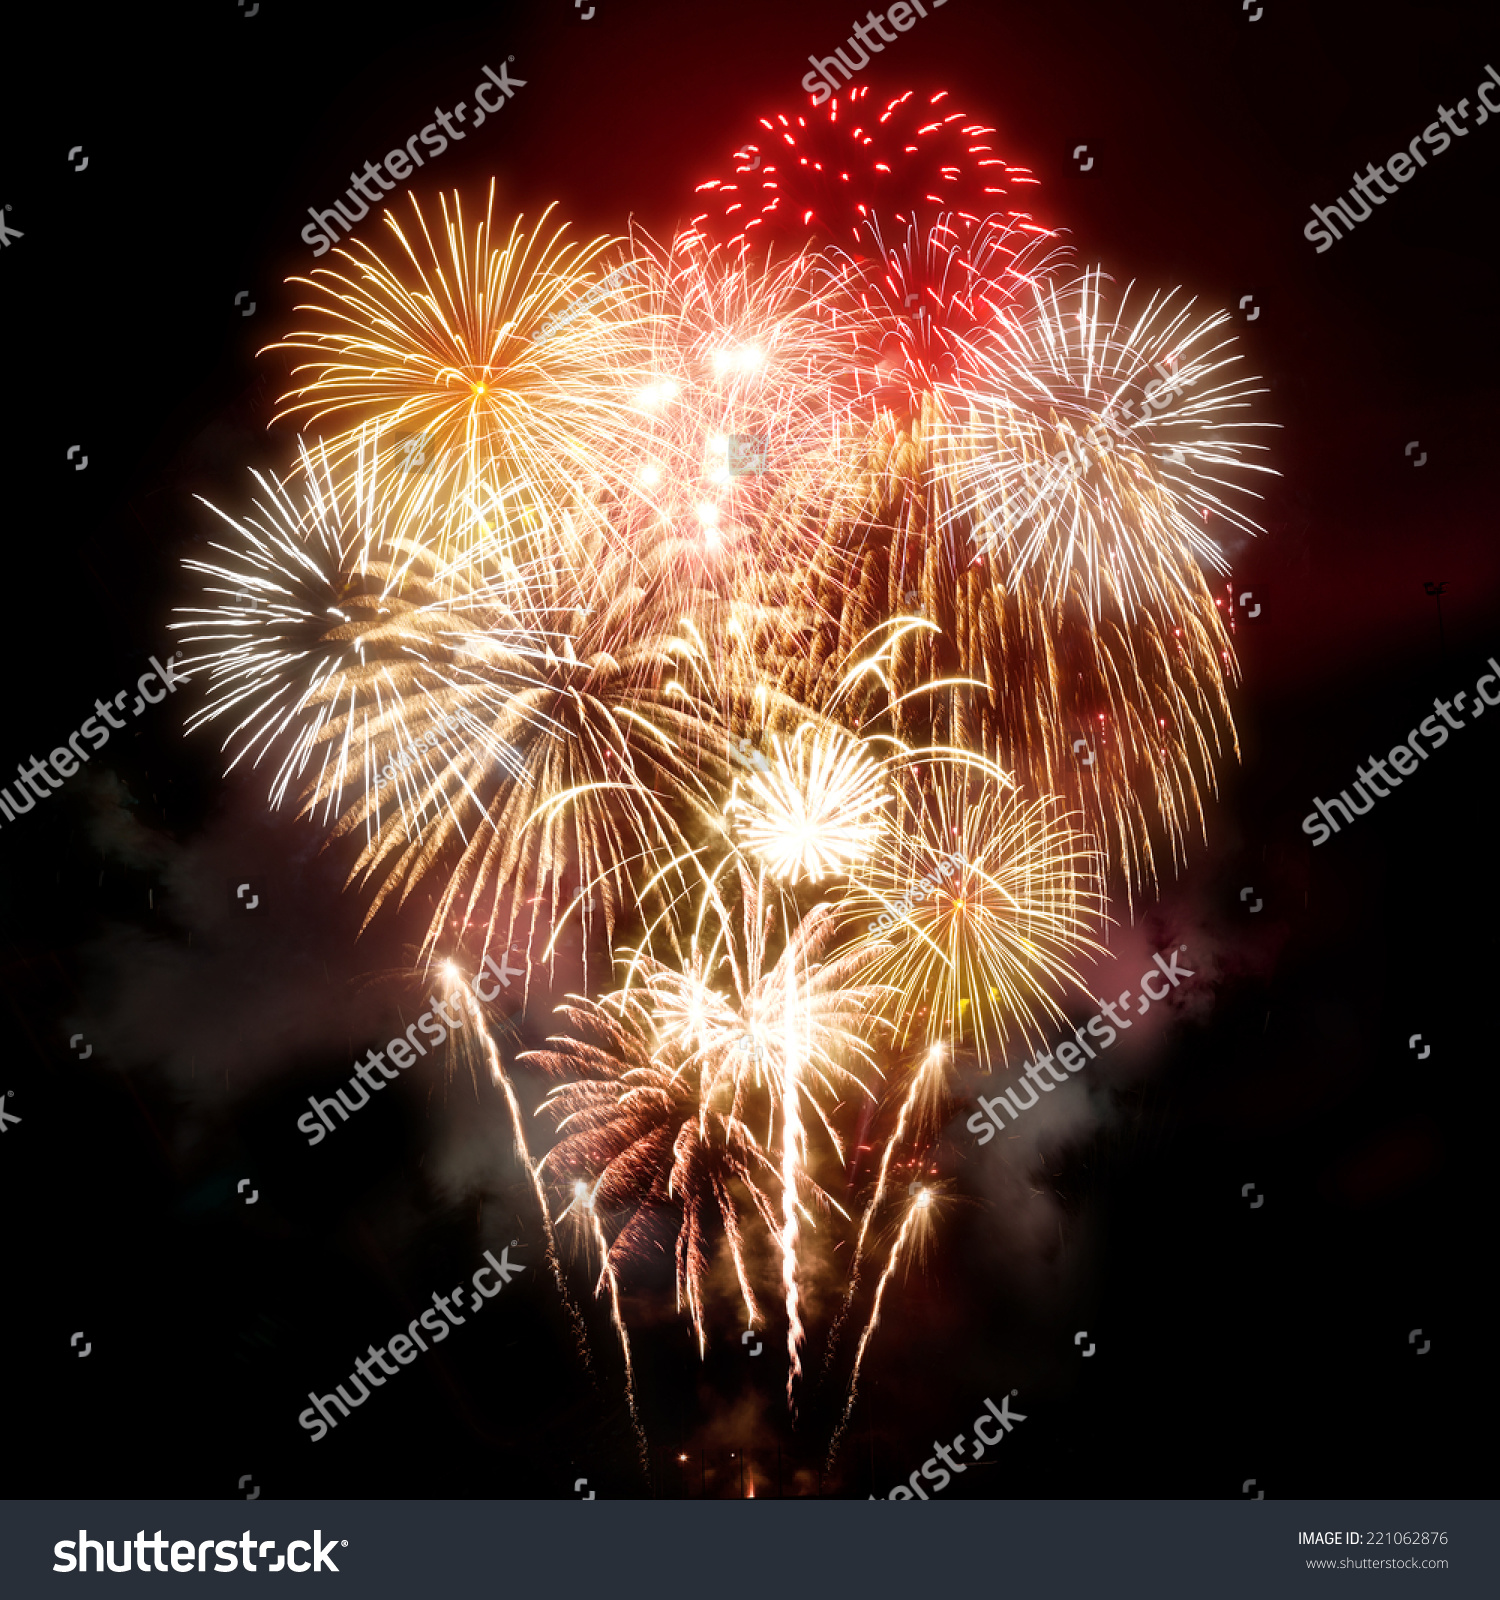 Large fireworks photo